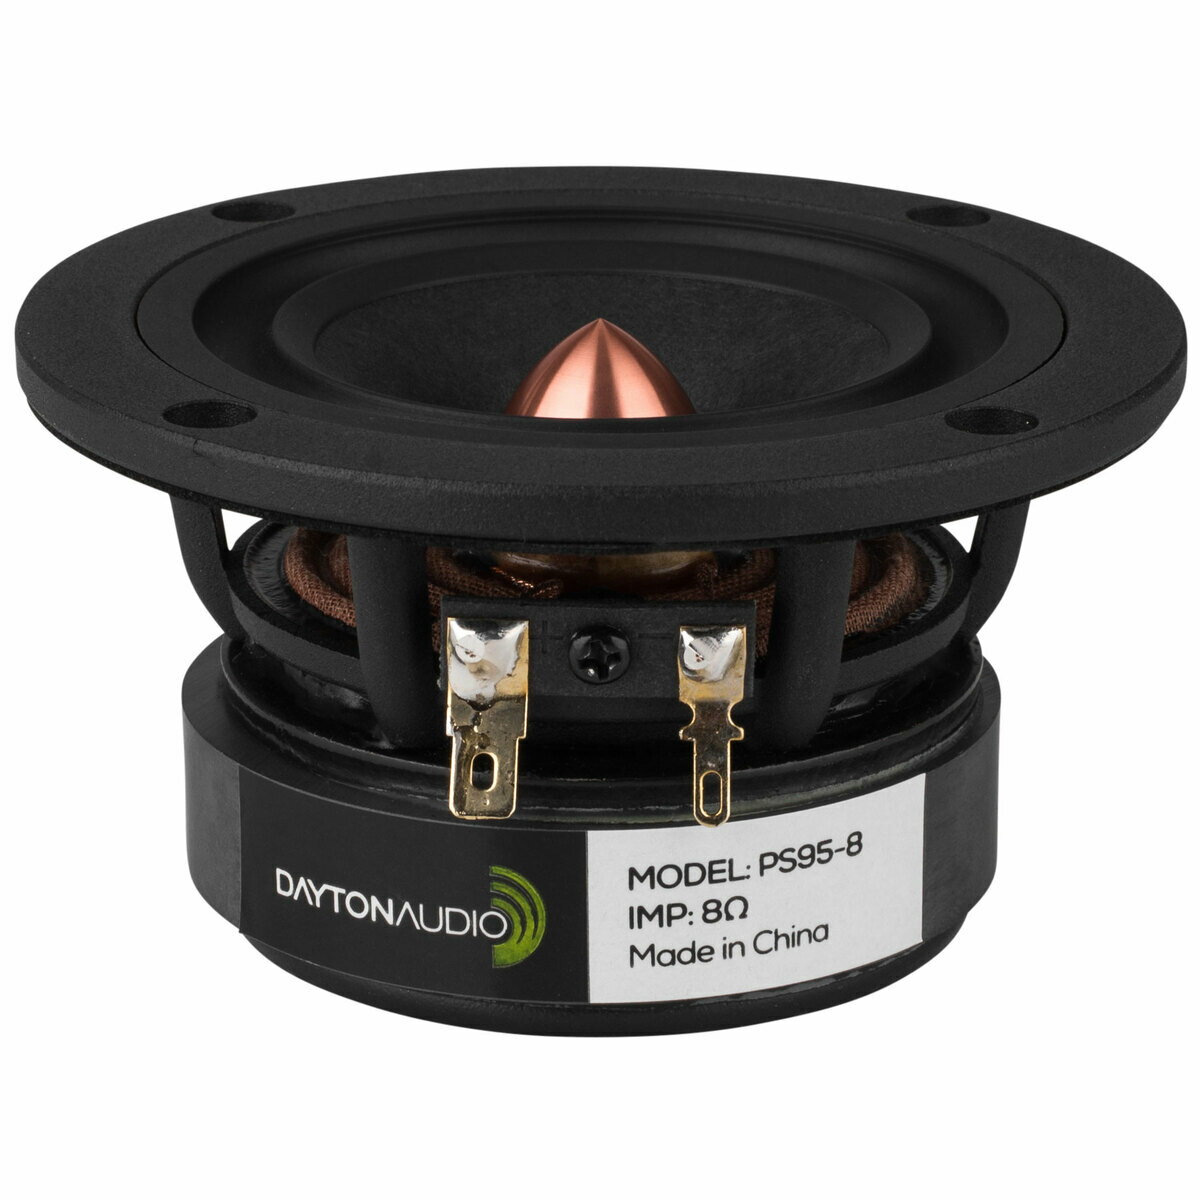 Dayton Audio PS95-8 スピーカーユニット 9.5cm フルレンジ 8Ω ペーパーコーン カッパー製イコライザー付 アルミダイキャストフレーム デイトン オーディオ